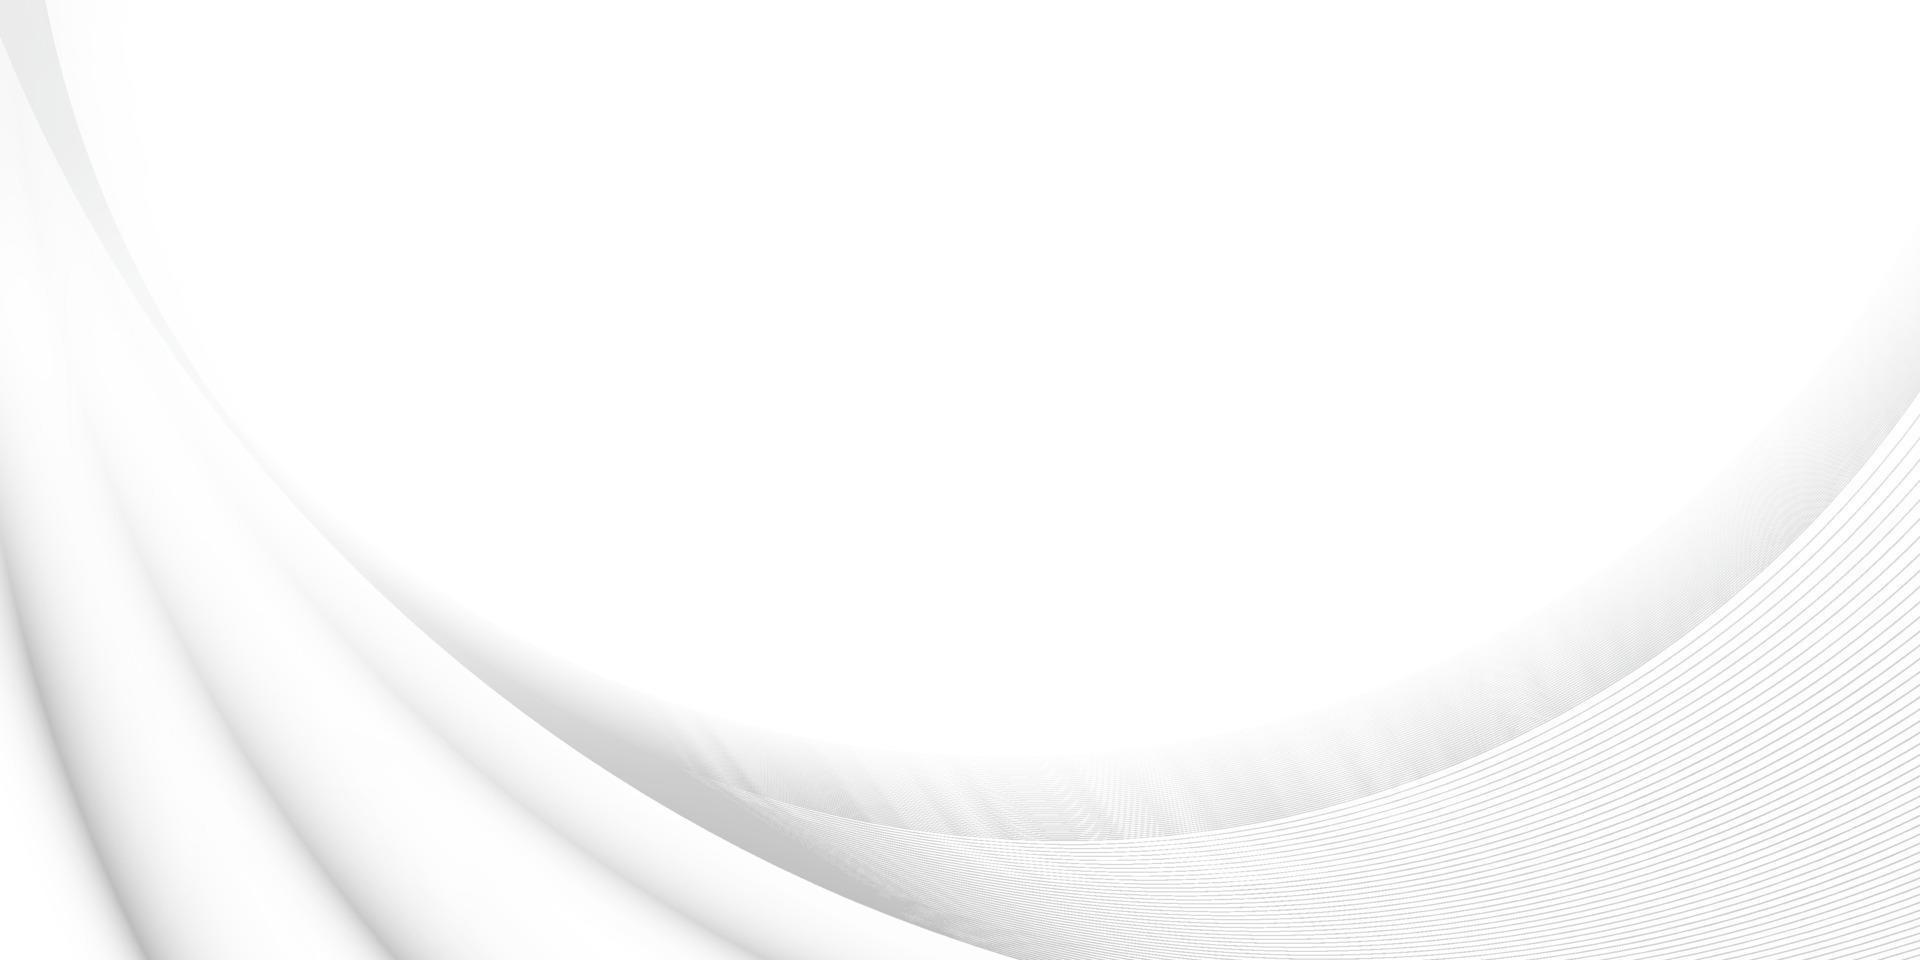 abstract wit en grijs kleur, modern ontwerp strepen achtergrond met meetkundig ronde vorm geven aan, Golf patroon. vector illustratie.